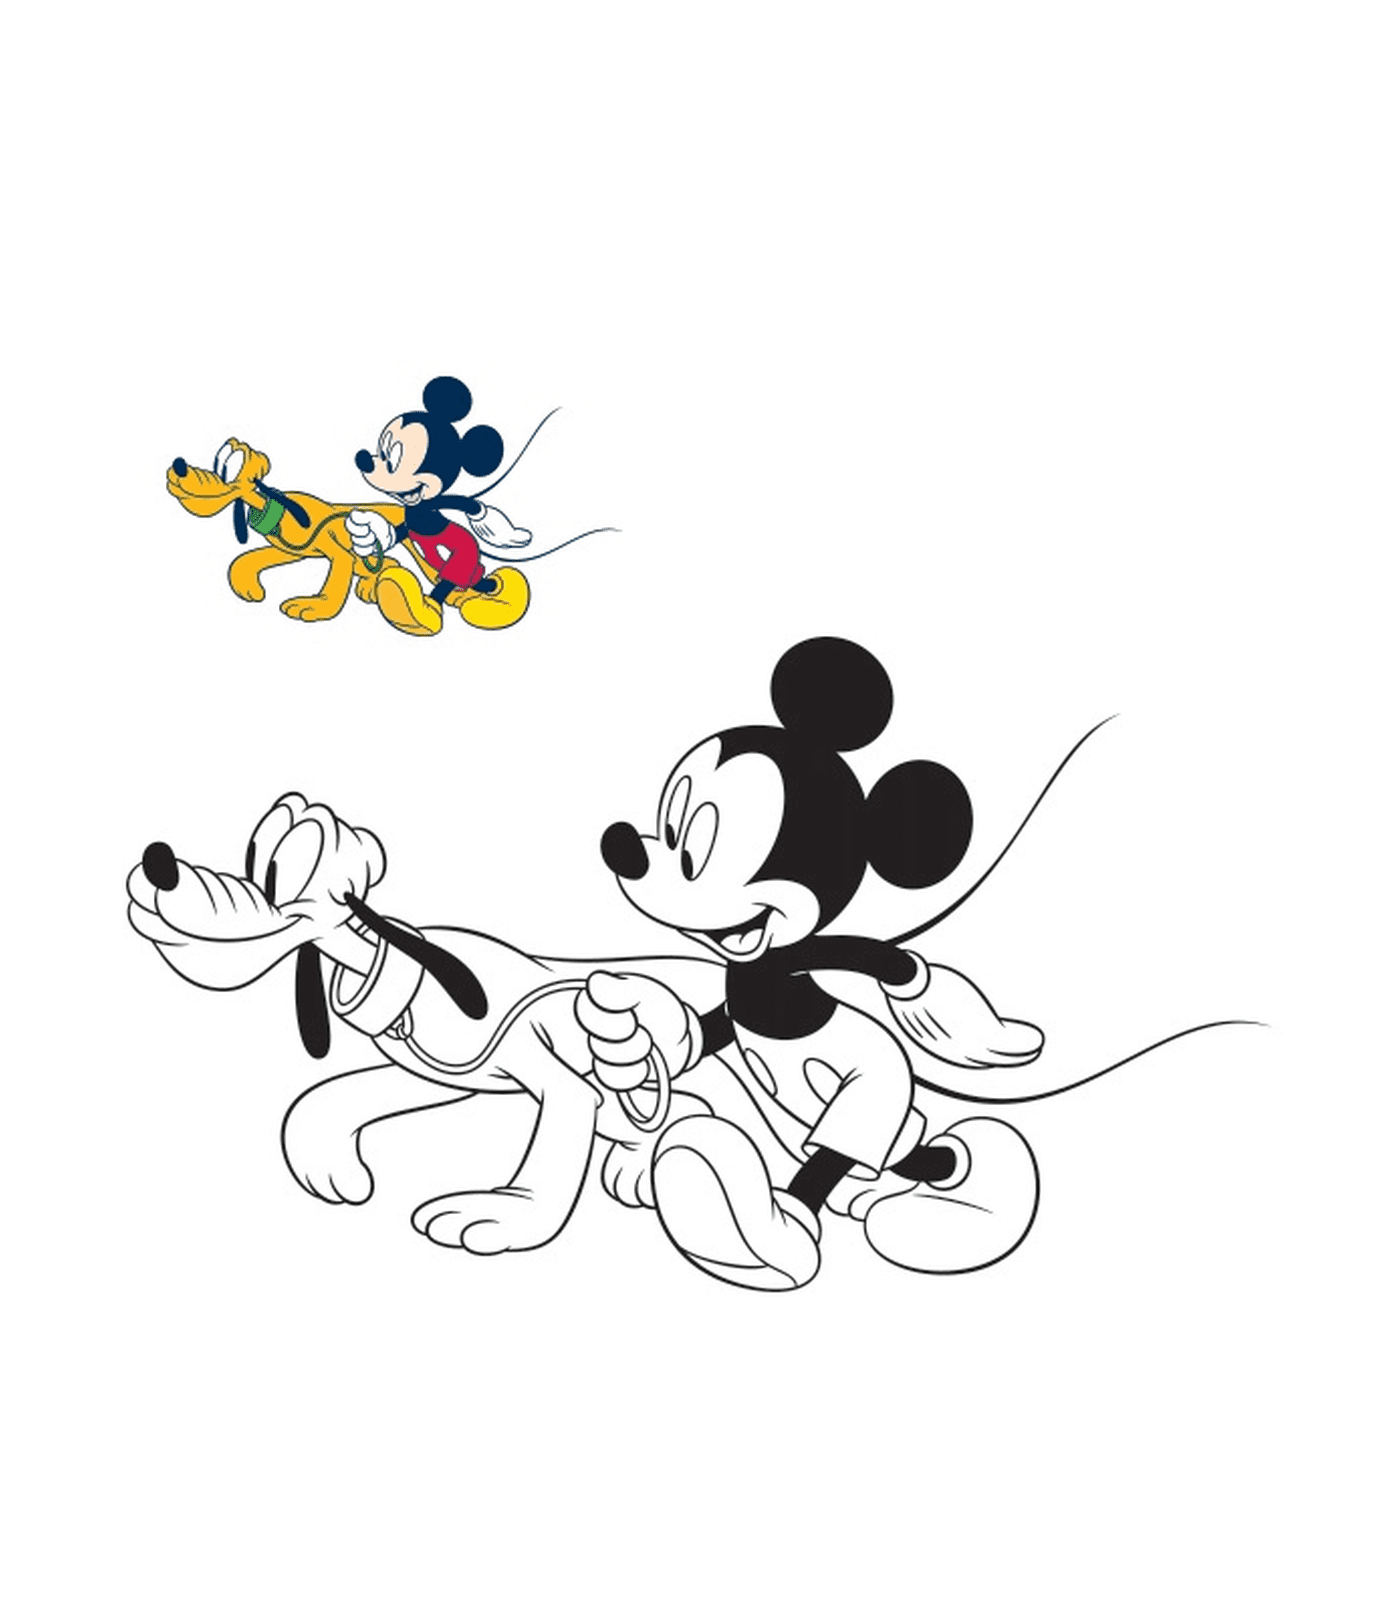  米老鼠和他的狗Pluto一起走 